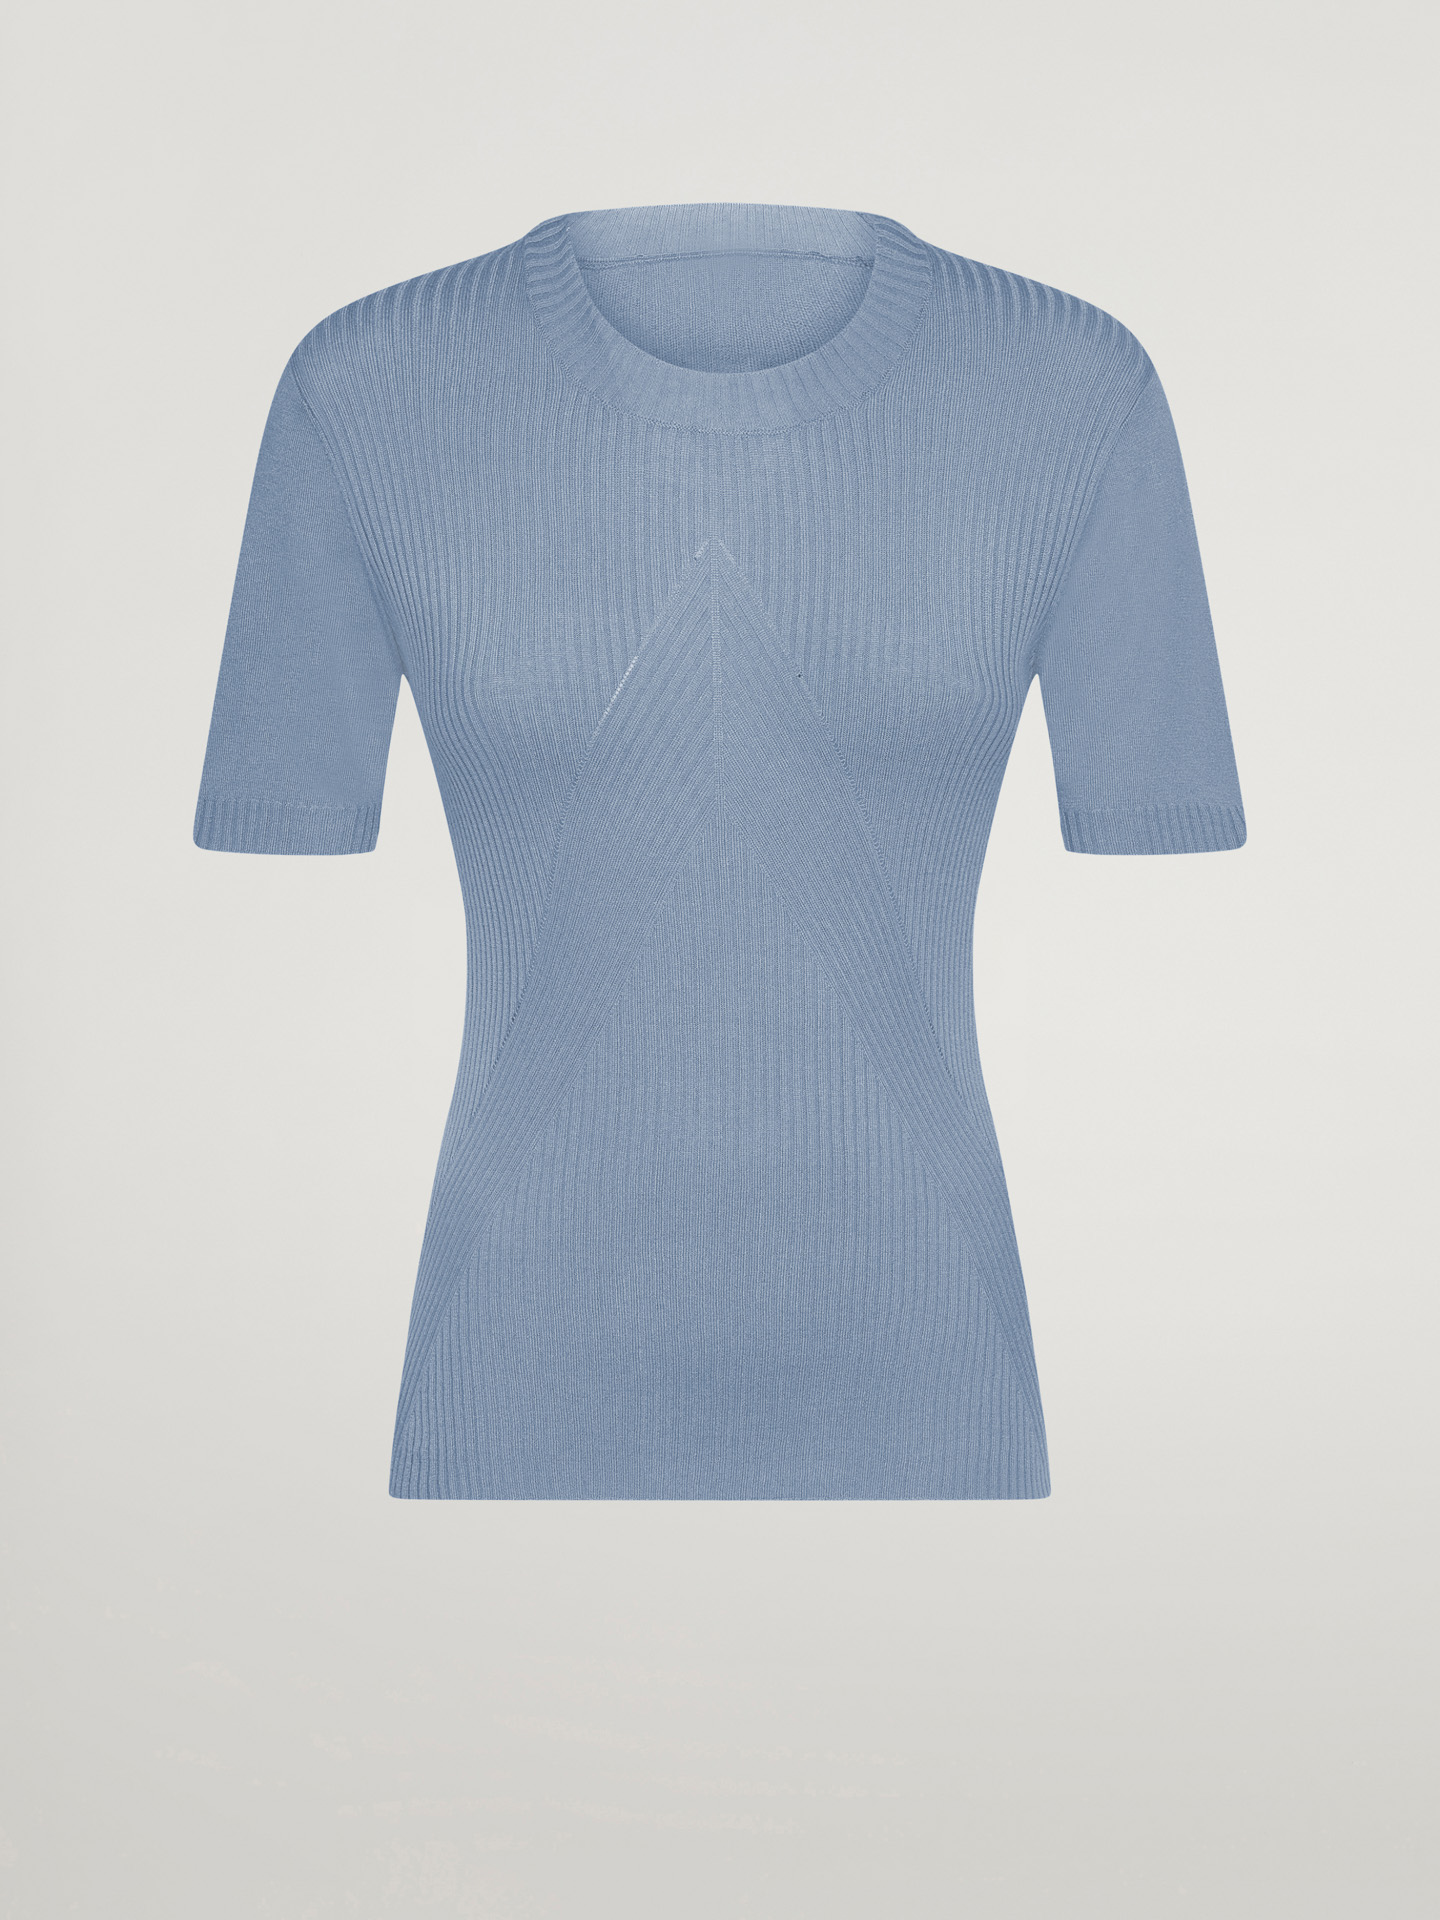 Wolford - Cashmere Top Short Sleeves, Frau, tempest, Größe: L günstig online kaufen